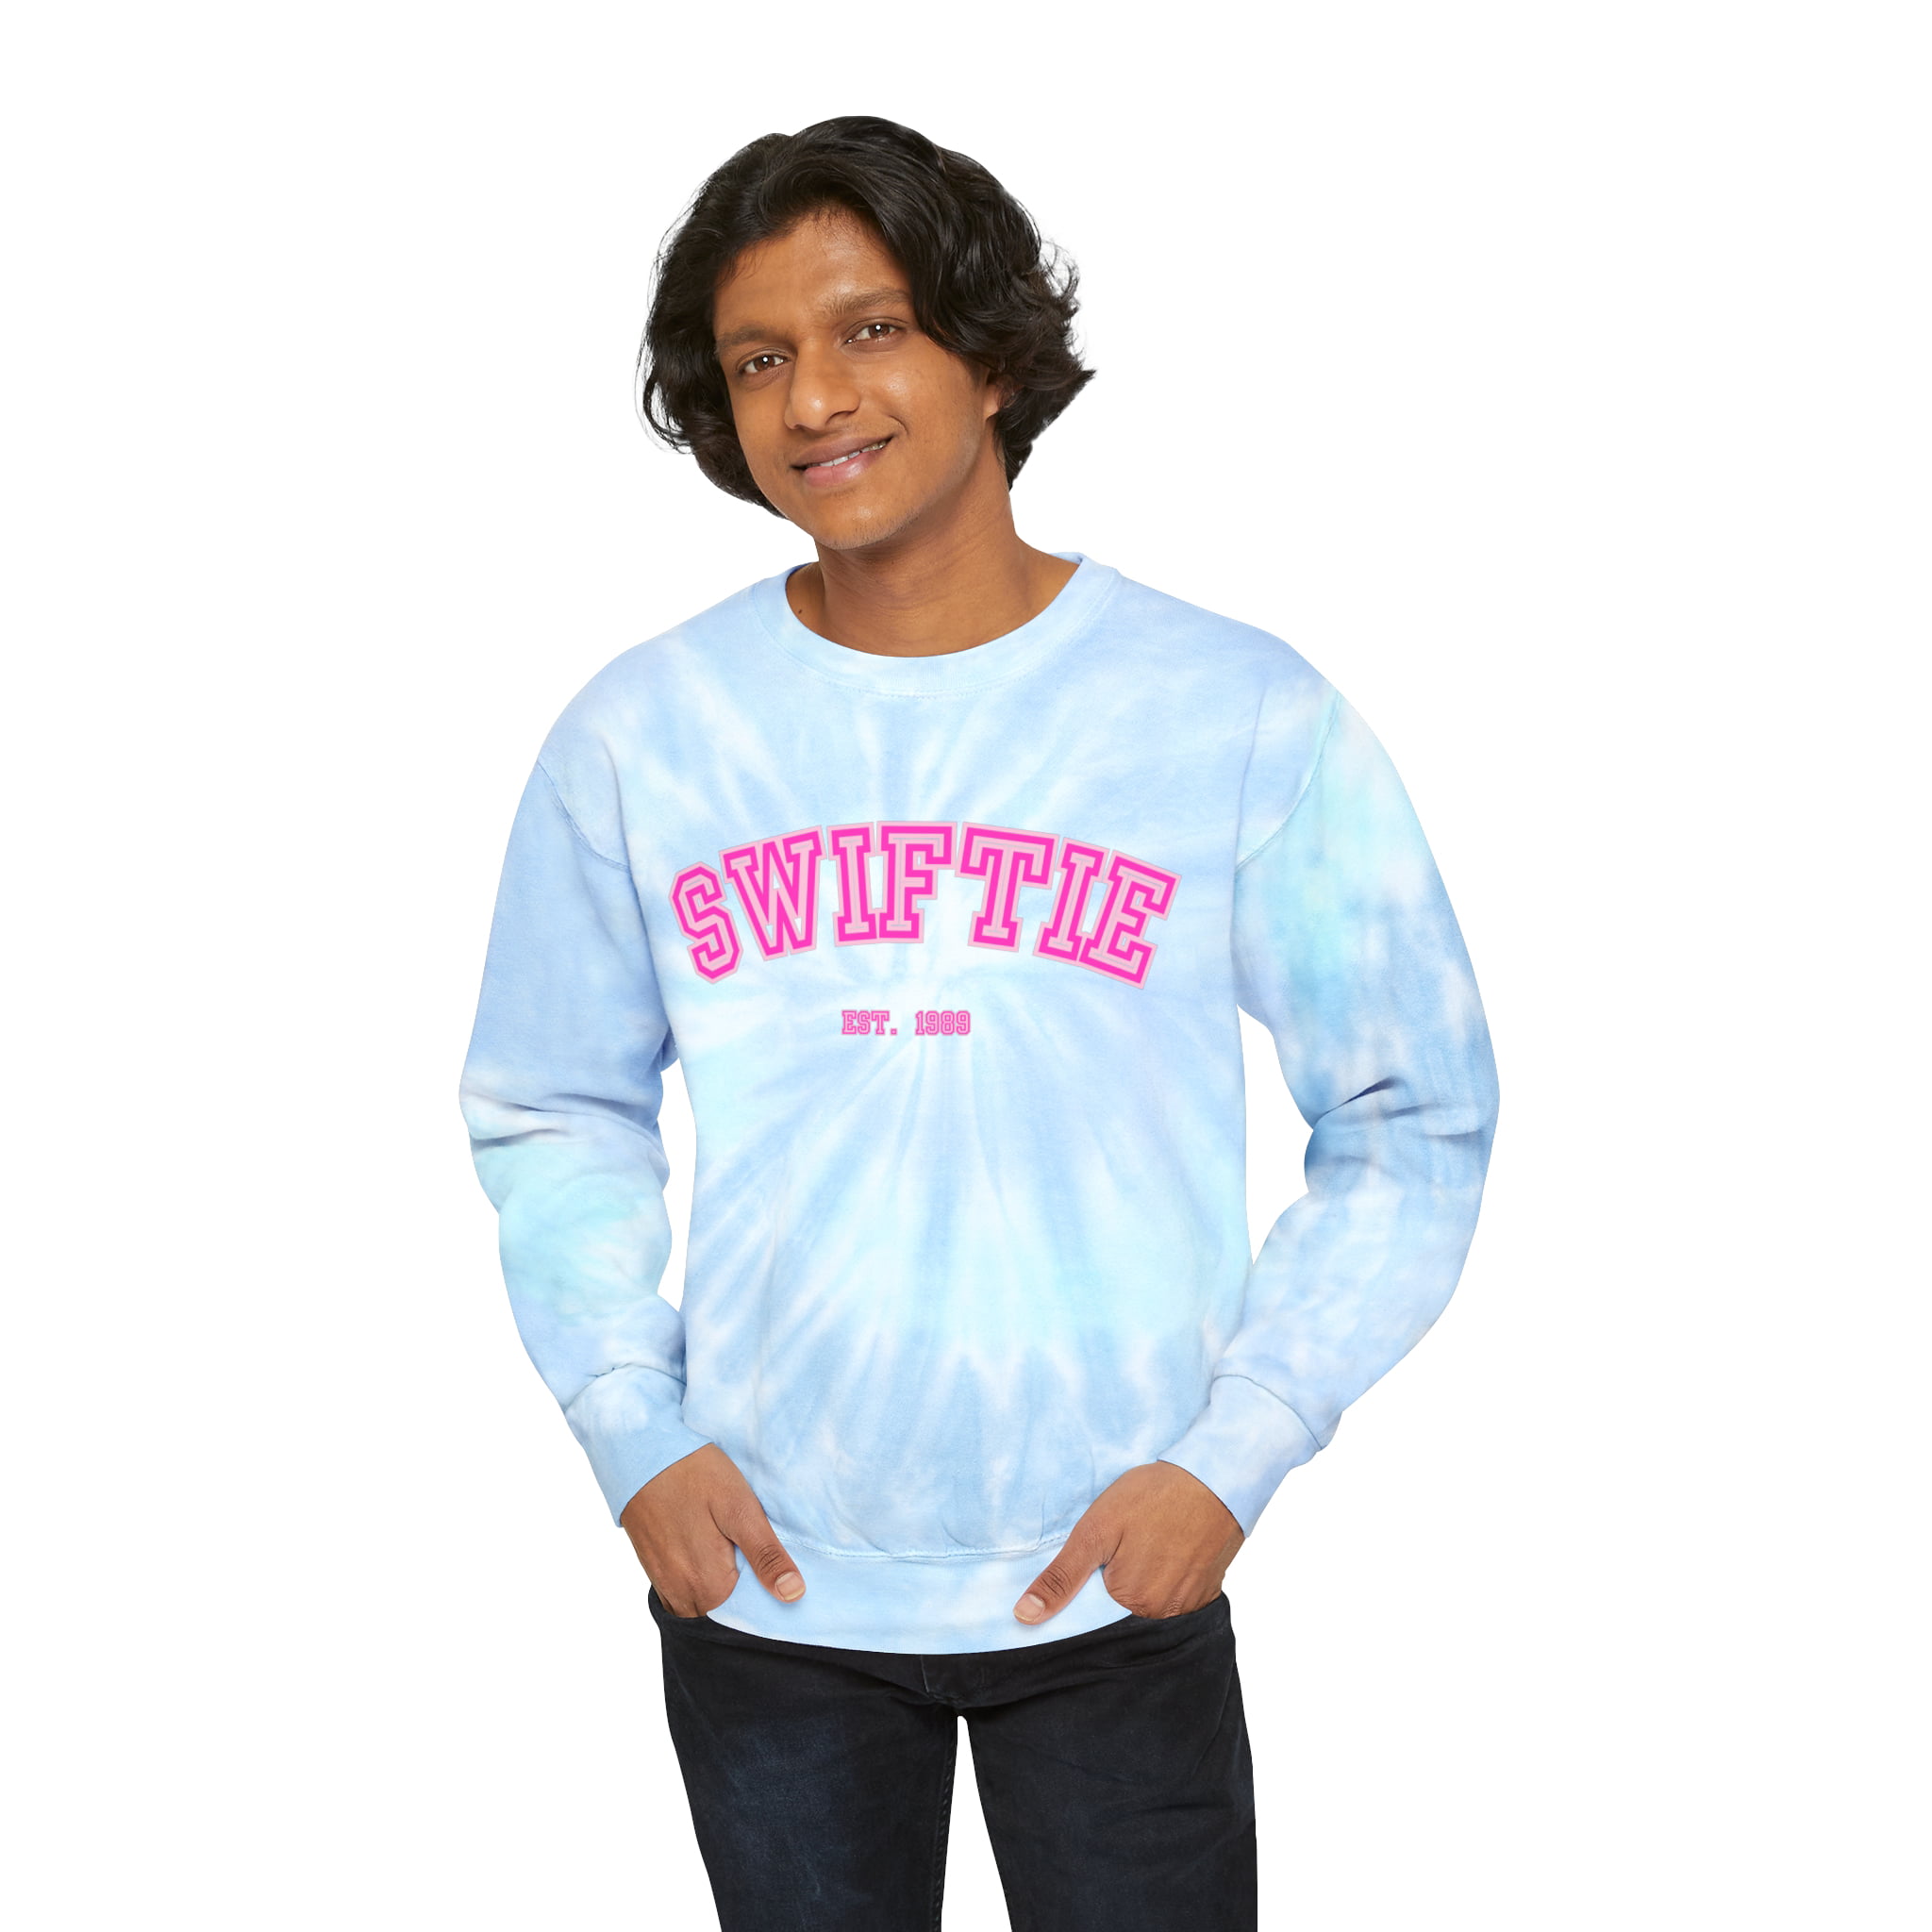 SWIFTIE Sweatshirt Swiftie … curated on LTK